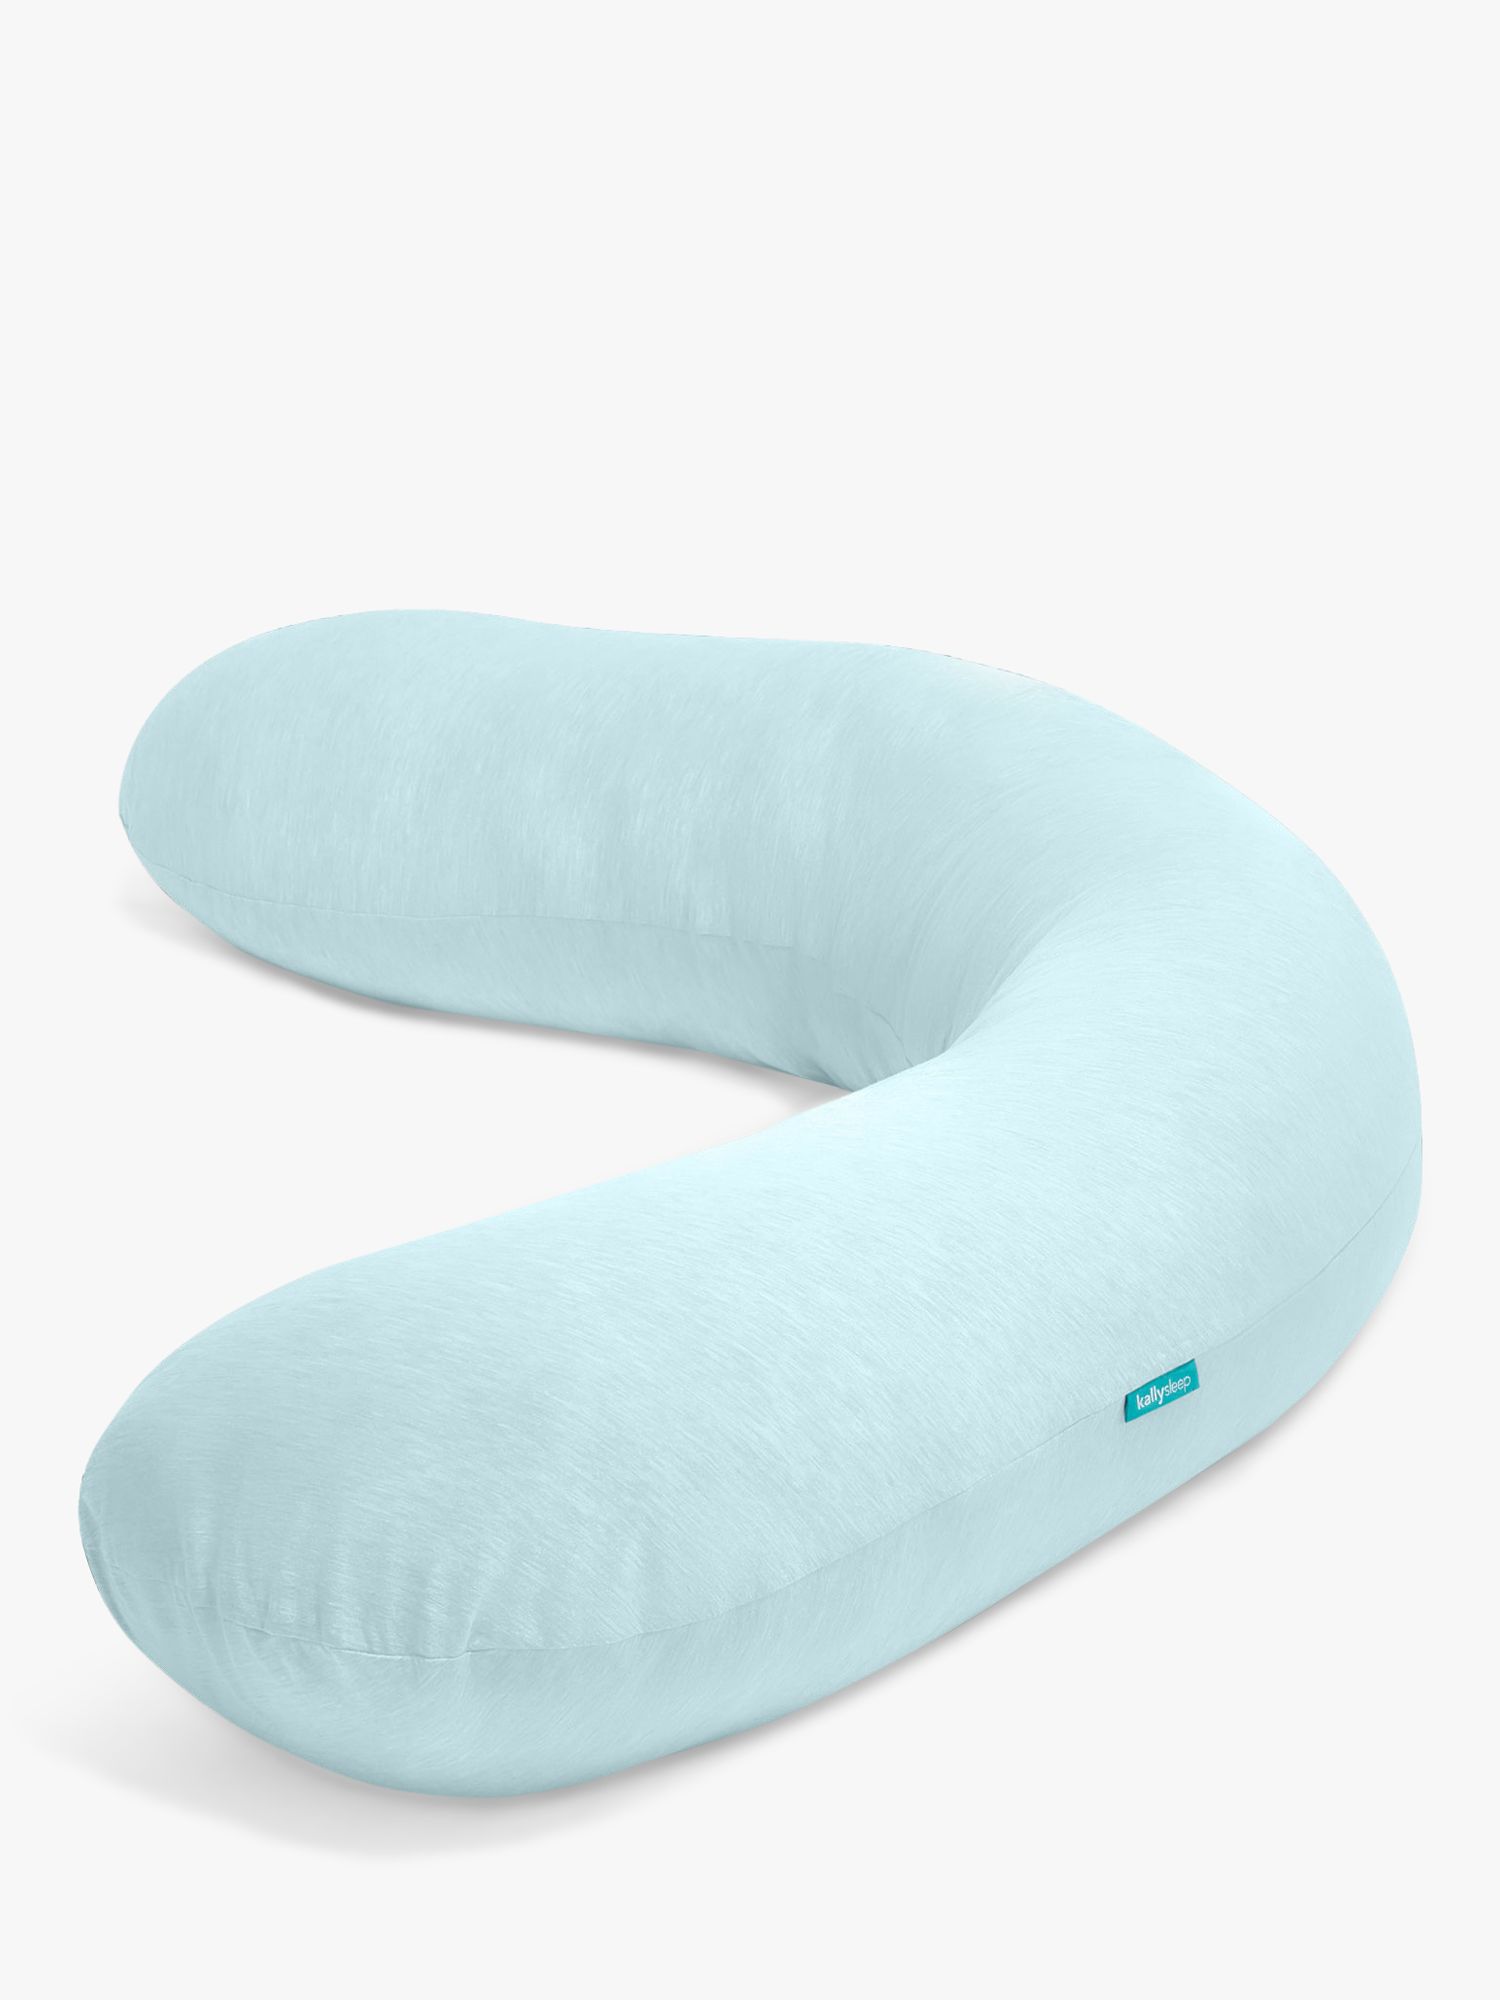 Kally Sleep Full Length Body Support Pillow